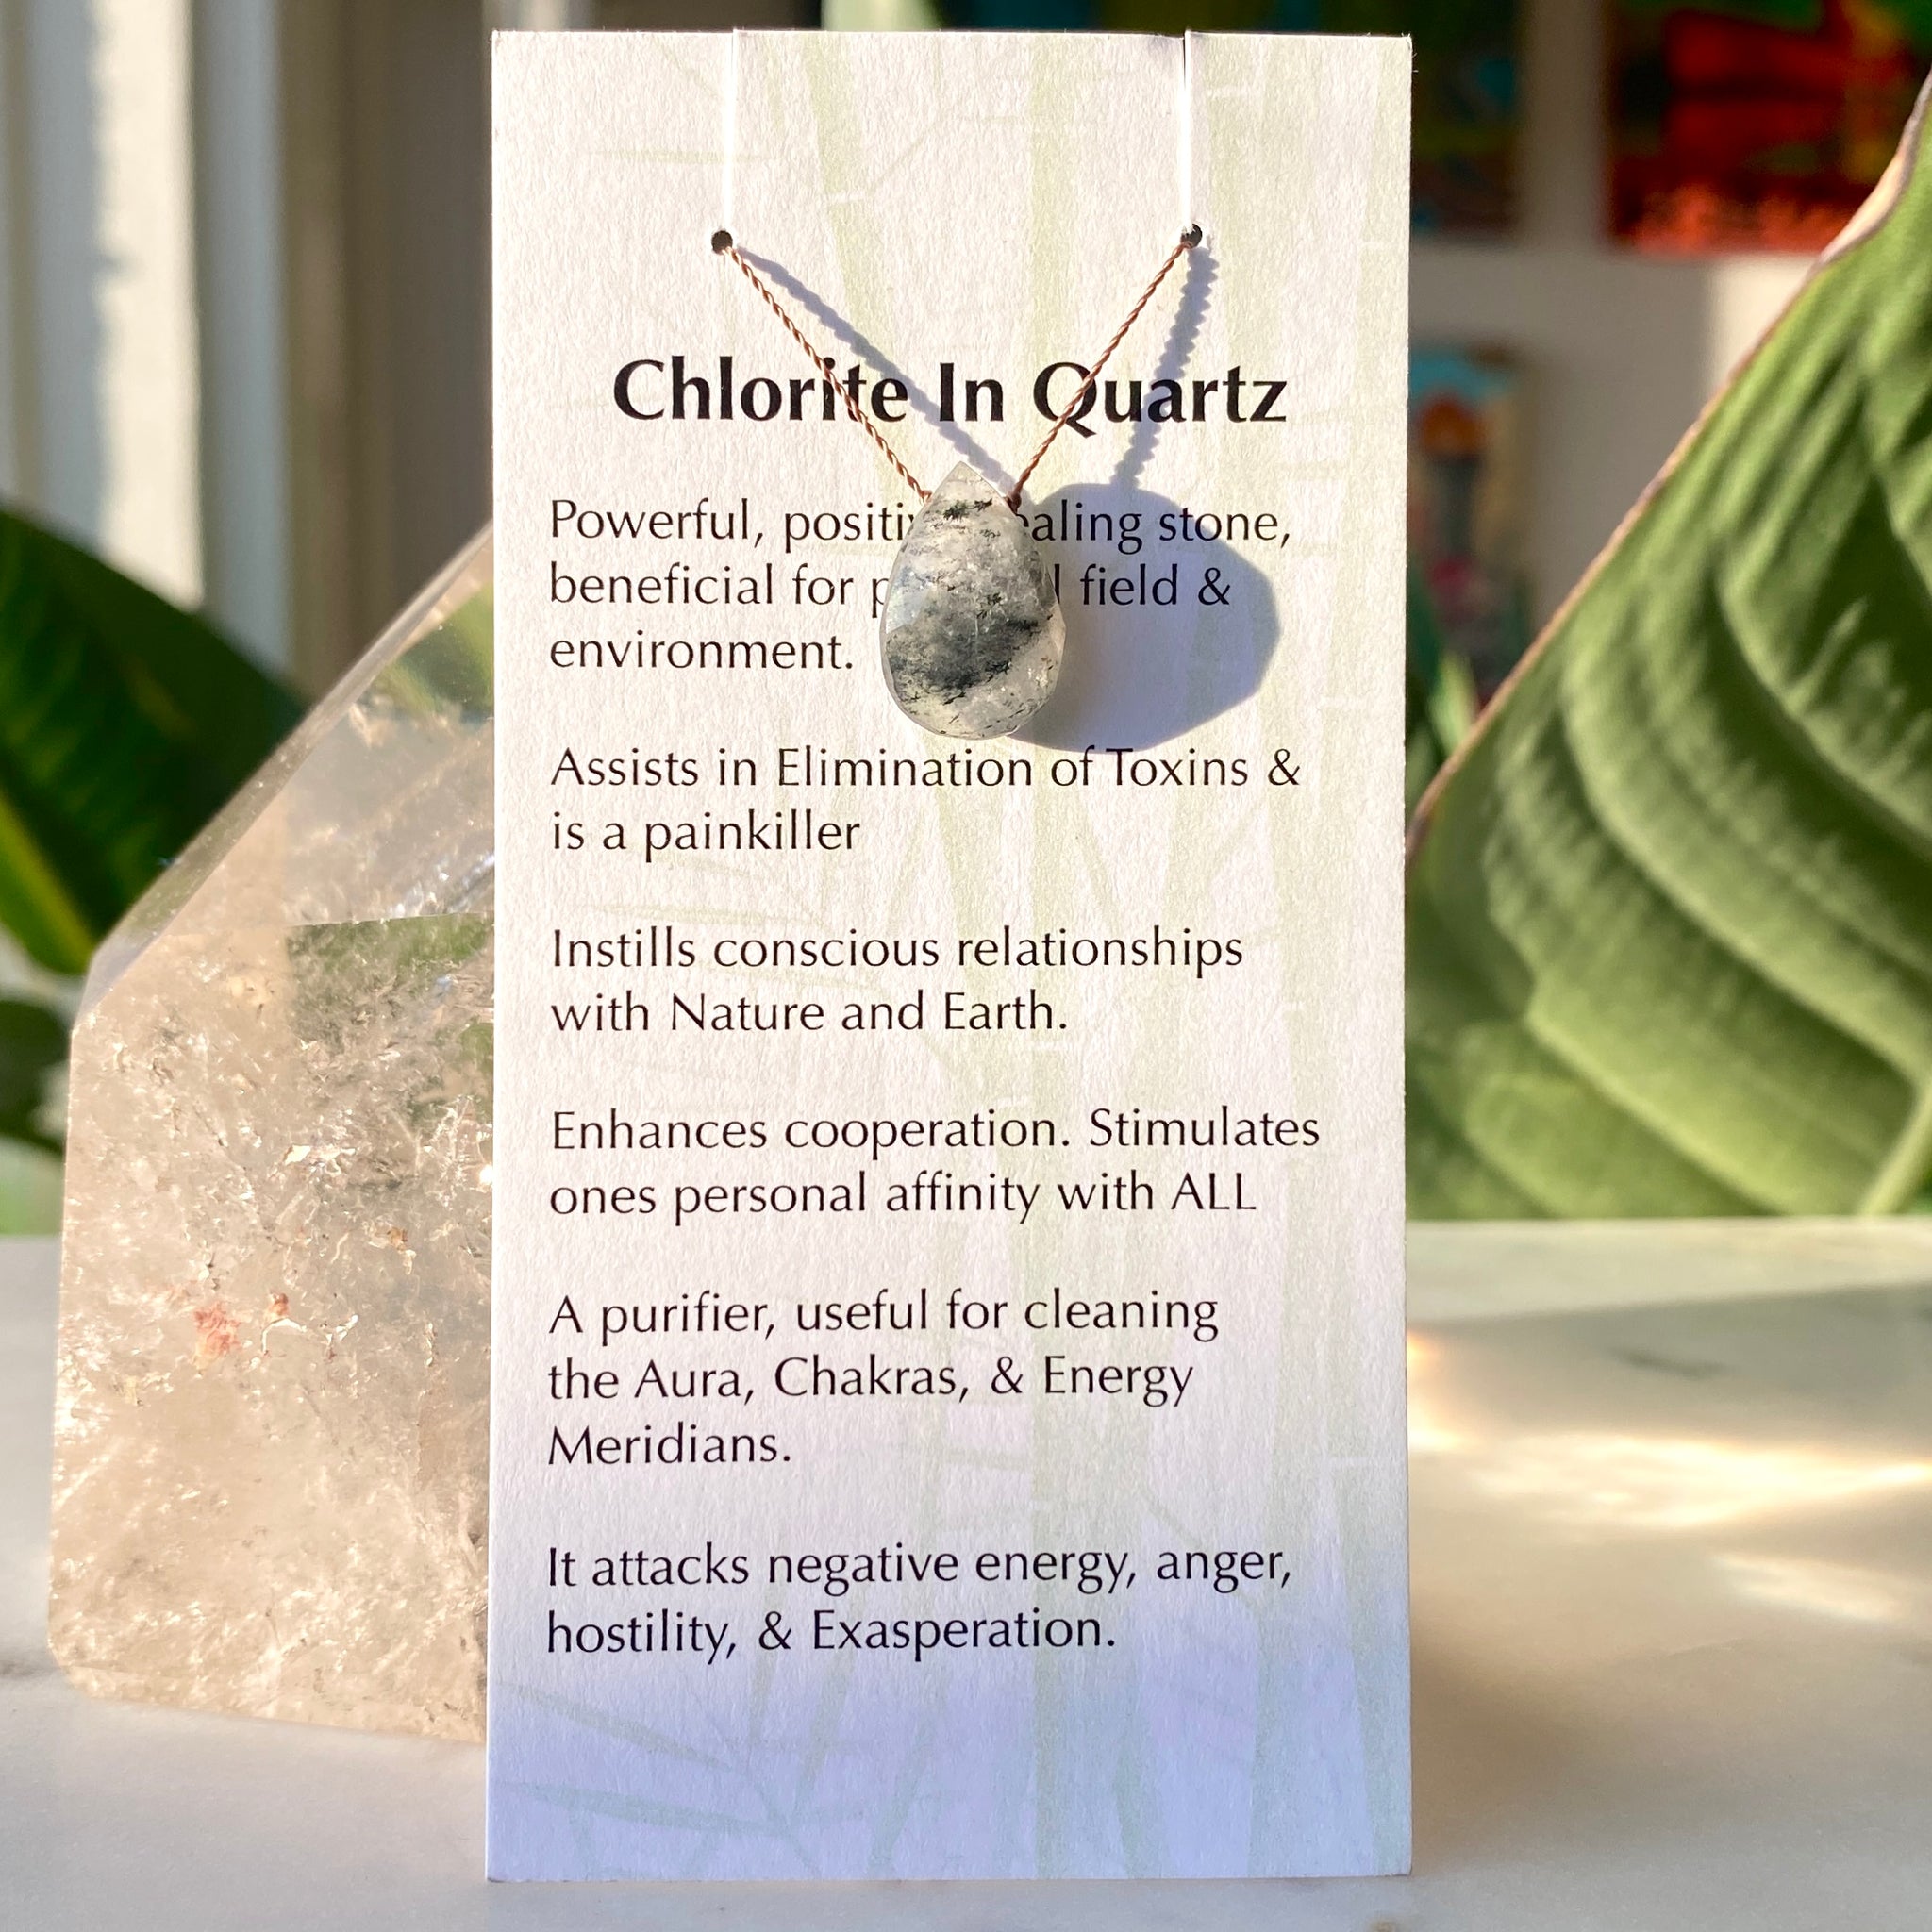 Chlorite in Quartz